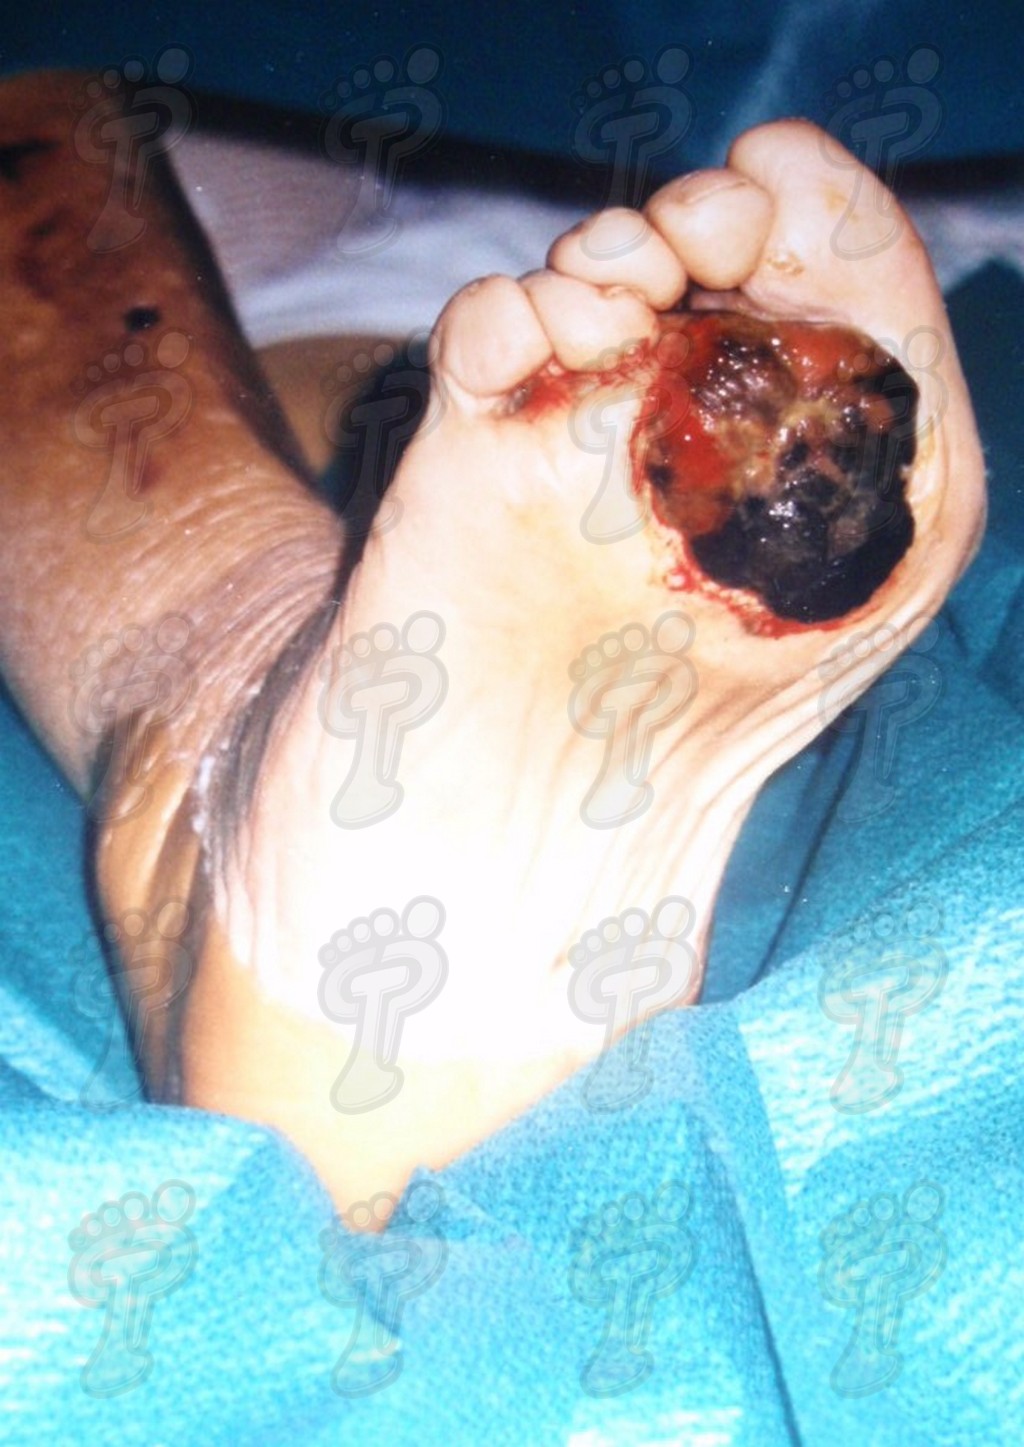 Tumores malignos en el pie